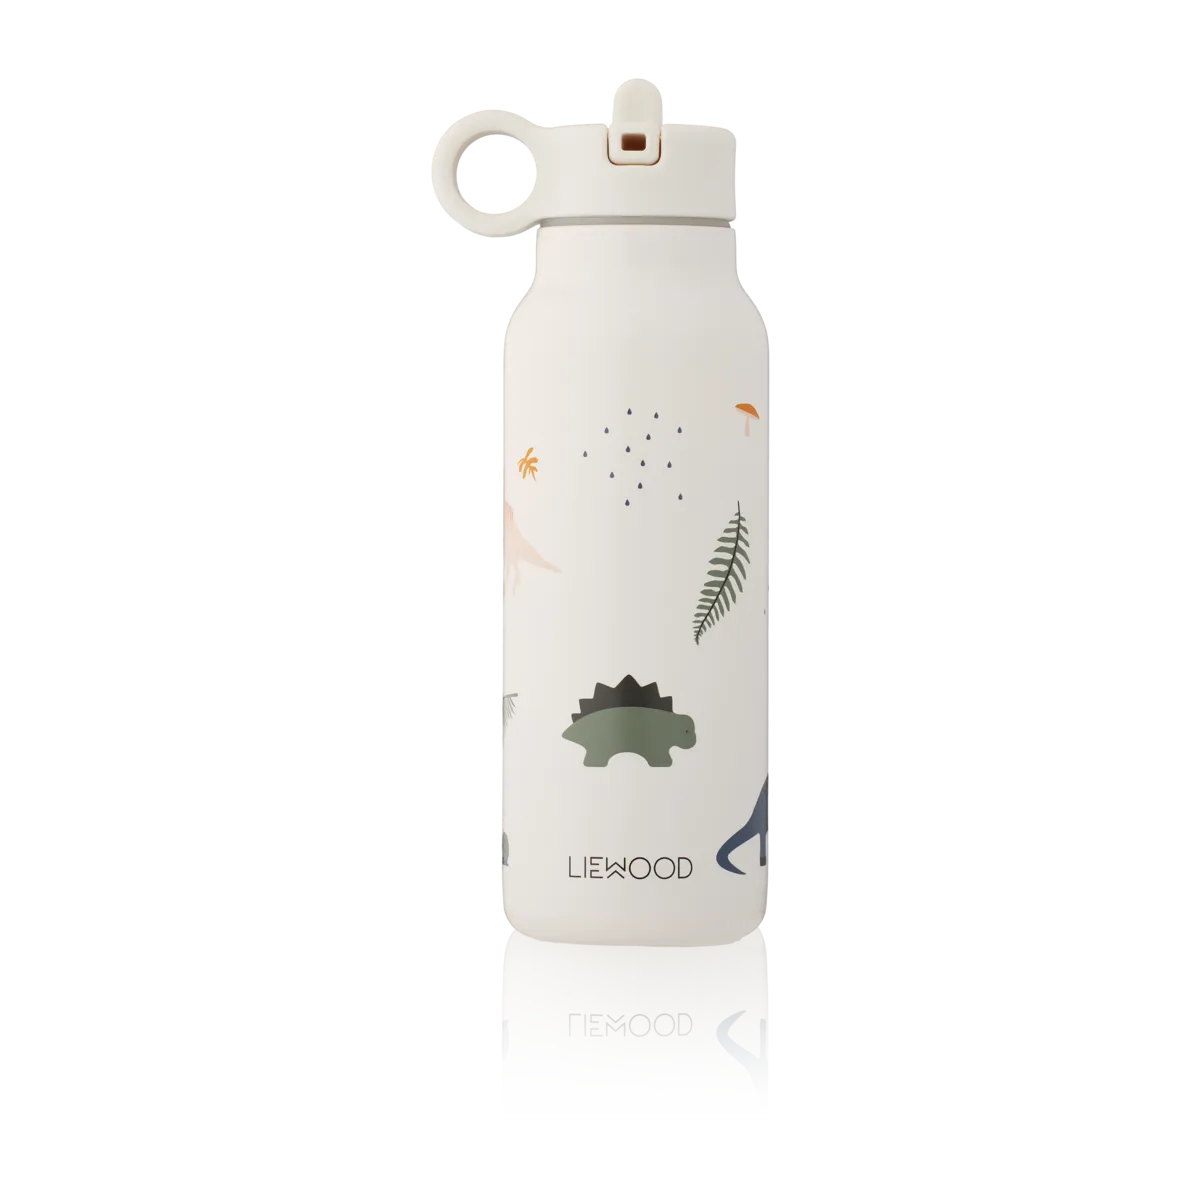 Supercoole Trinkflasche mit Thermalfunktion von Liewood Die auslaufsicher Wasserflasche besteht aus dem besten Edelstahl auf dem Markt - 18/8 Premium-Stahl. Sie hat eine Wärmefunktion und hält Flüssigkeiten heiß und kalt